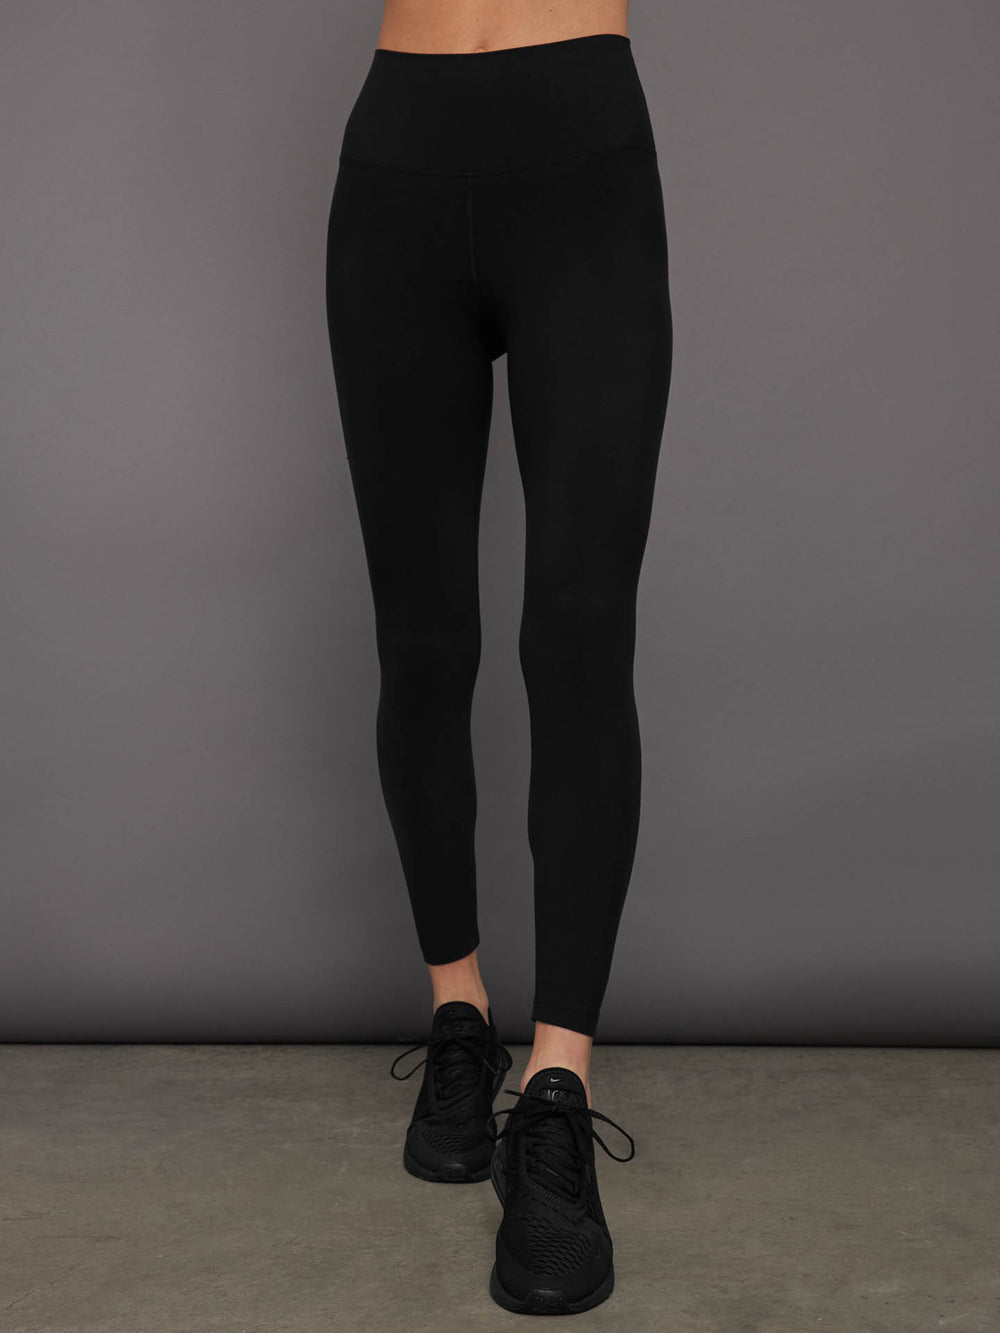 Carbon38 Women's High Waist Full Length Legging Black Size M